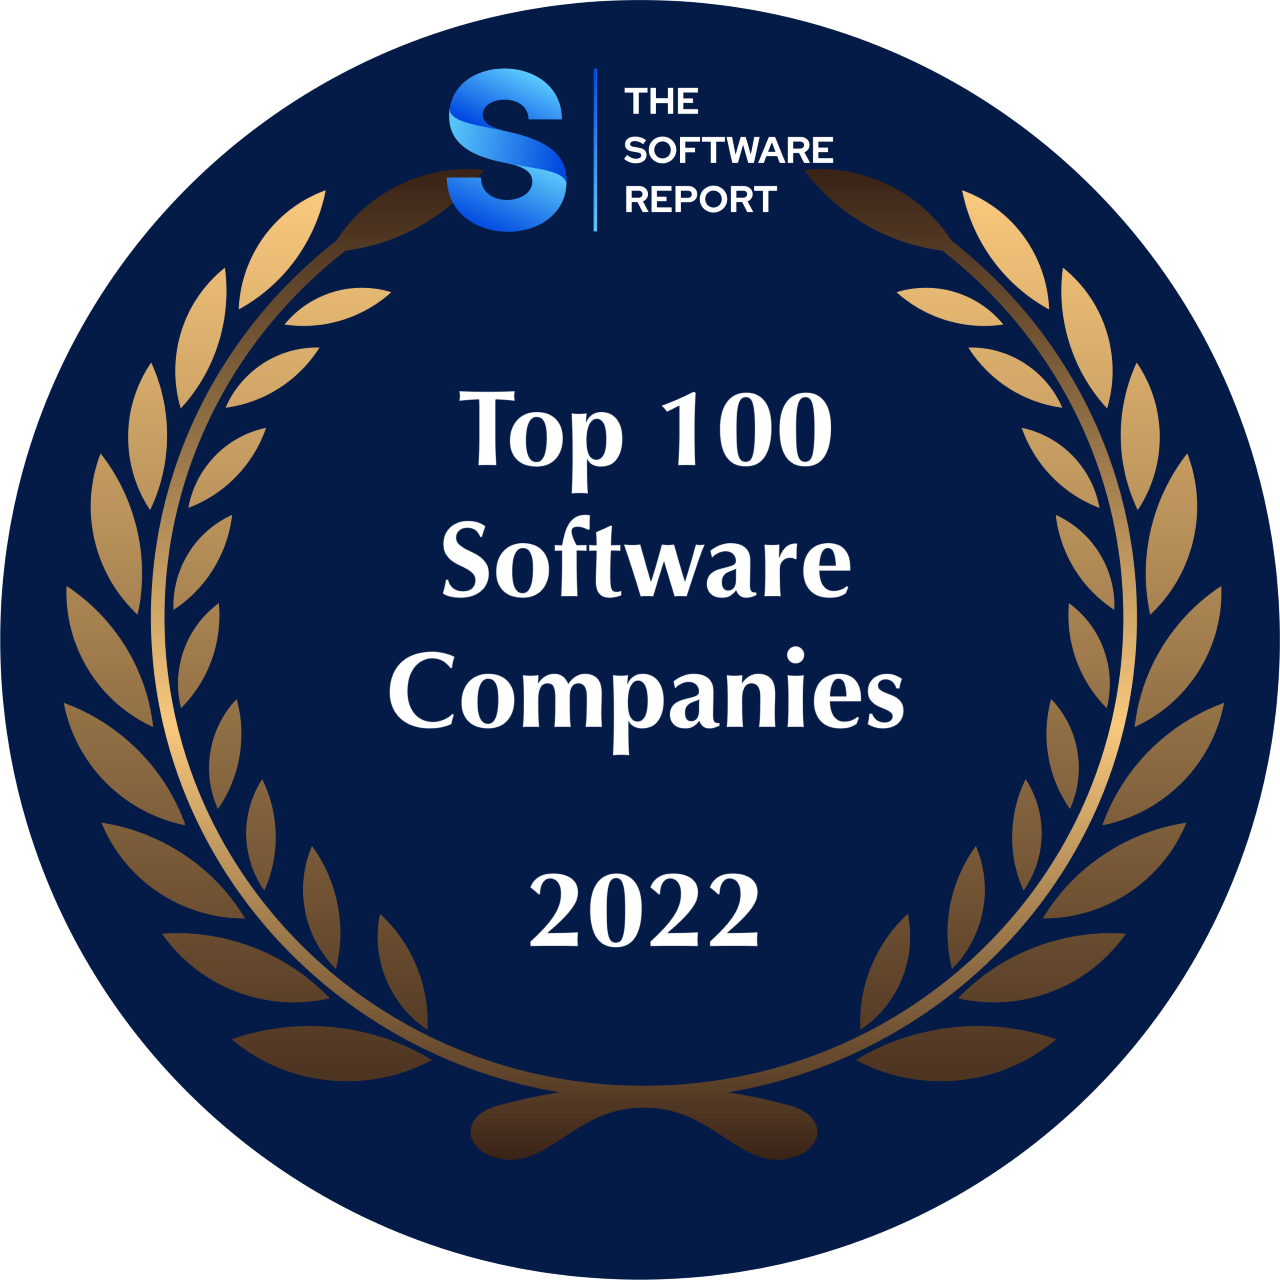 Top 100 Software Companies Award